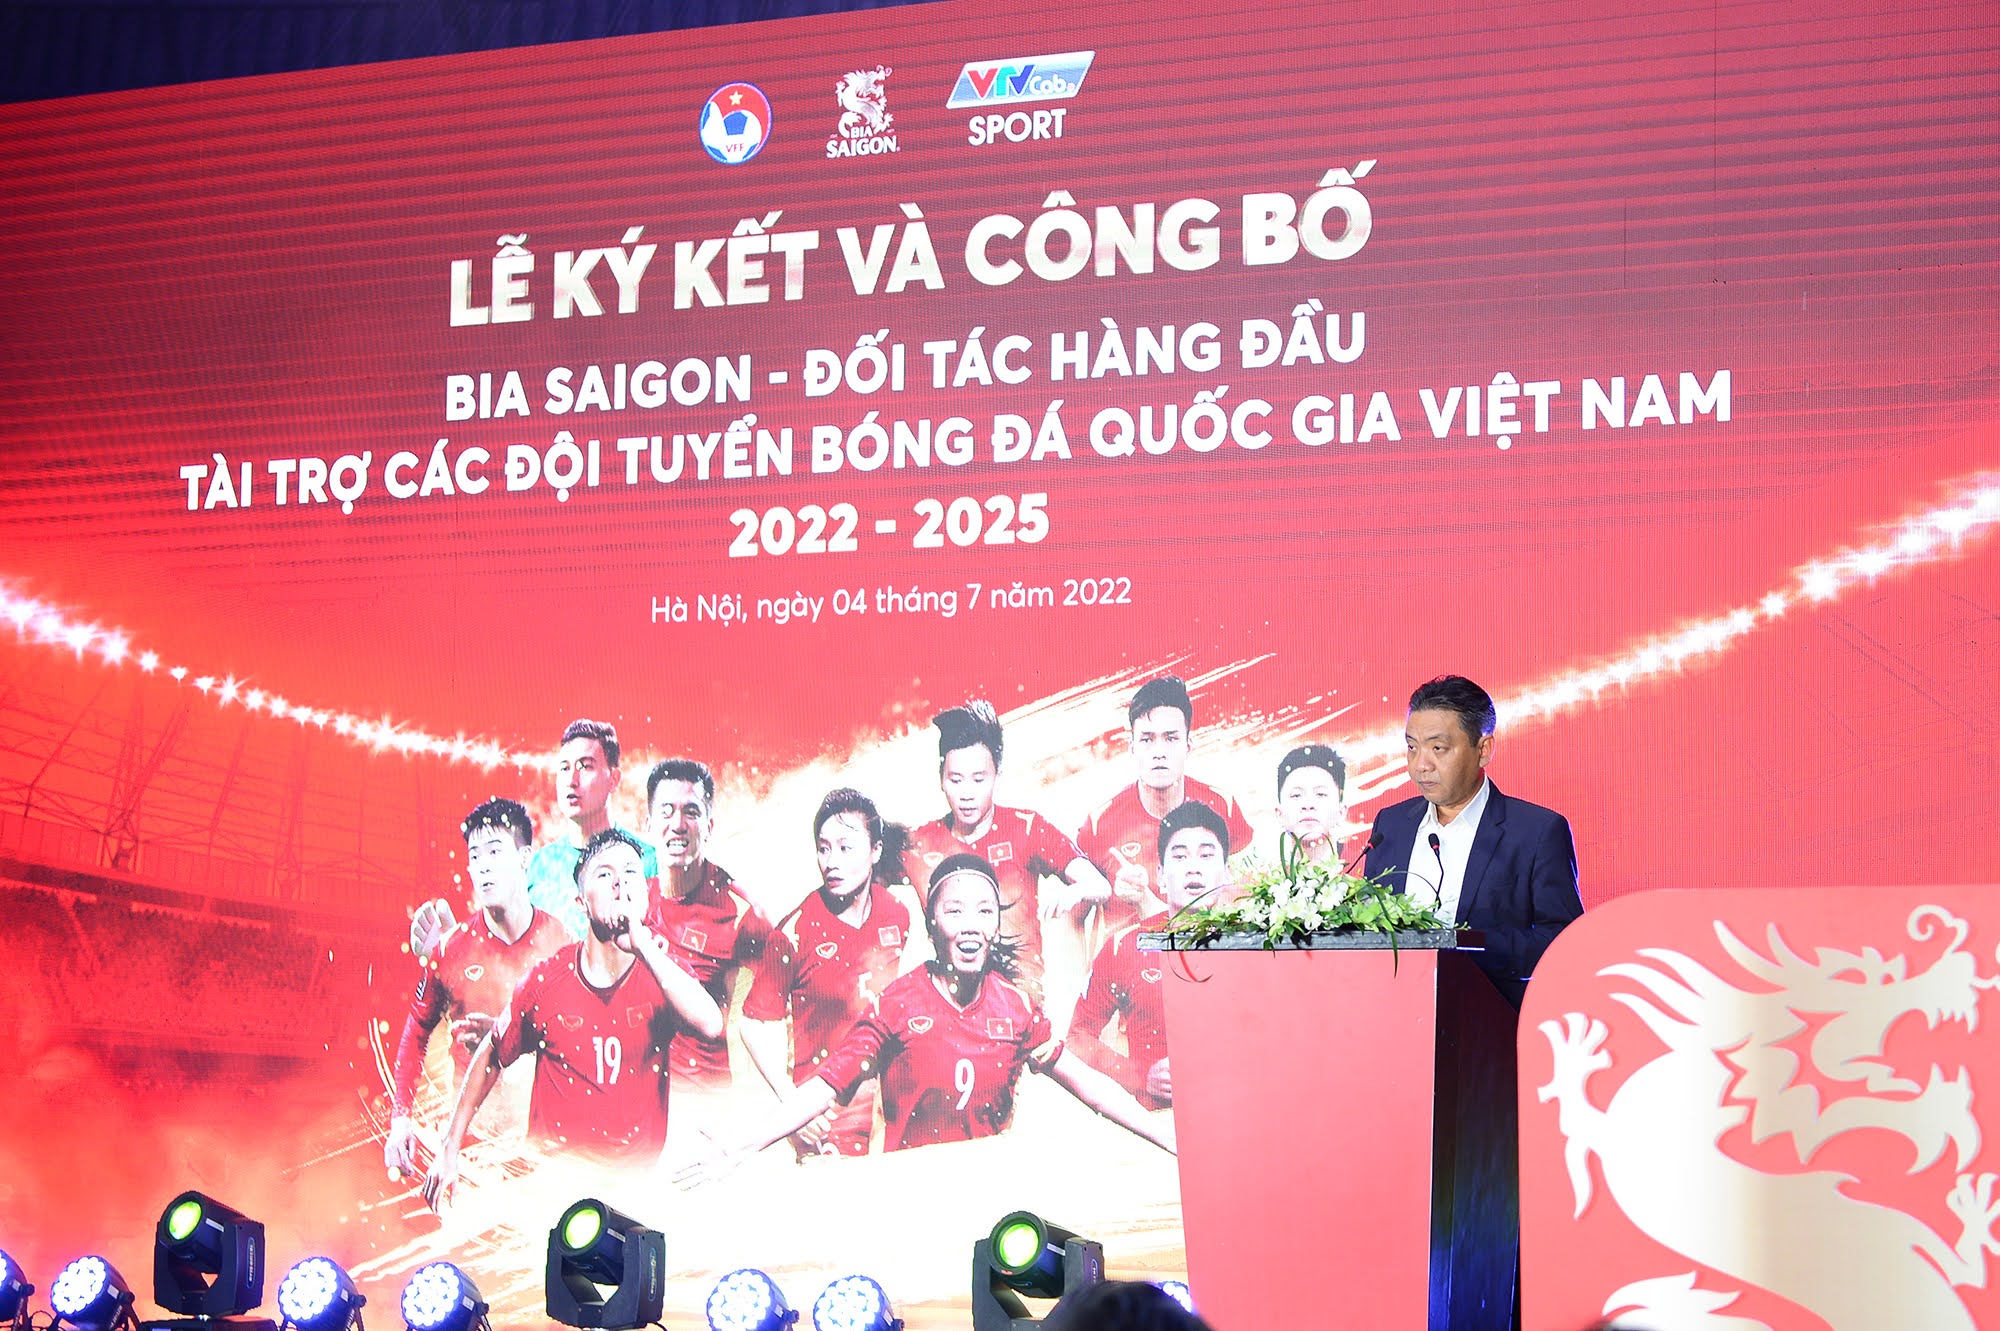 Đình Trọng, Duy Mạnh chứng kiến ĐT Việt Nam nhận tài trợ lớn - Ảnh 2.